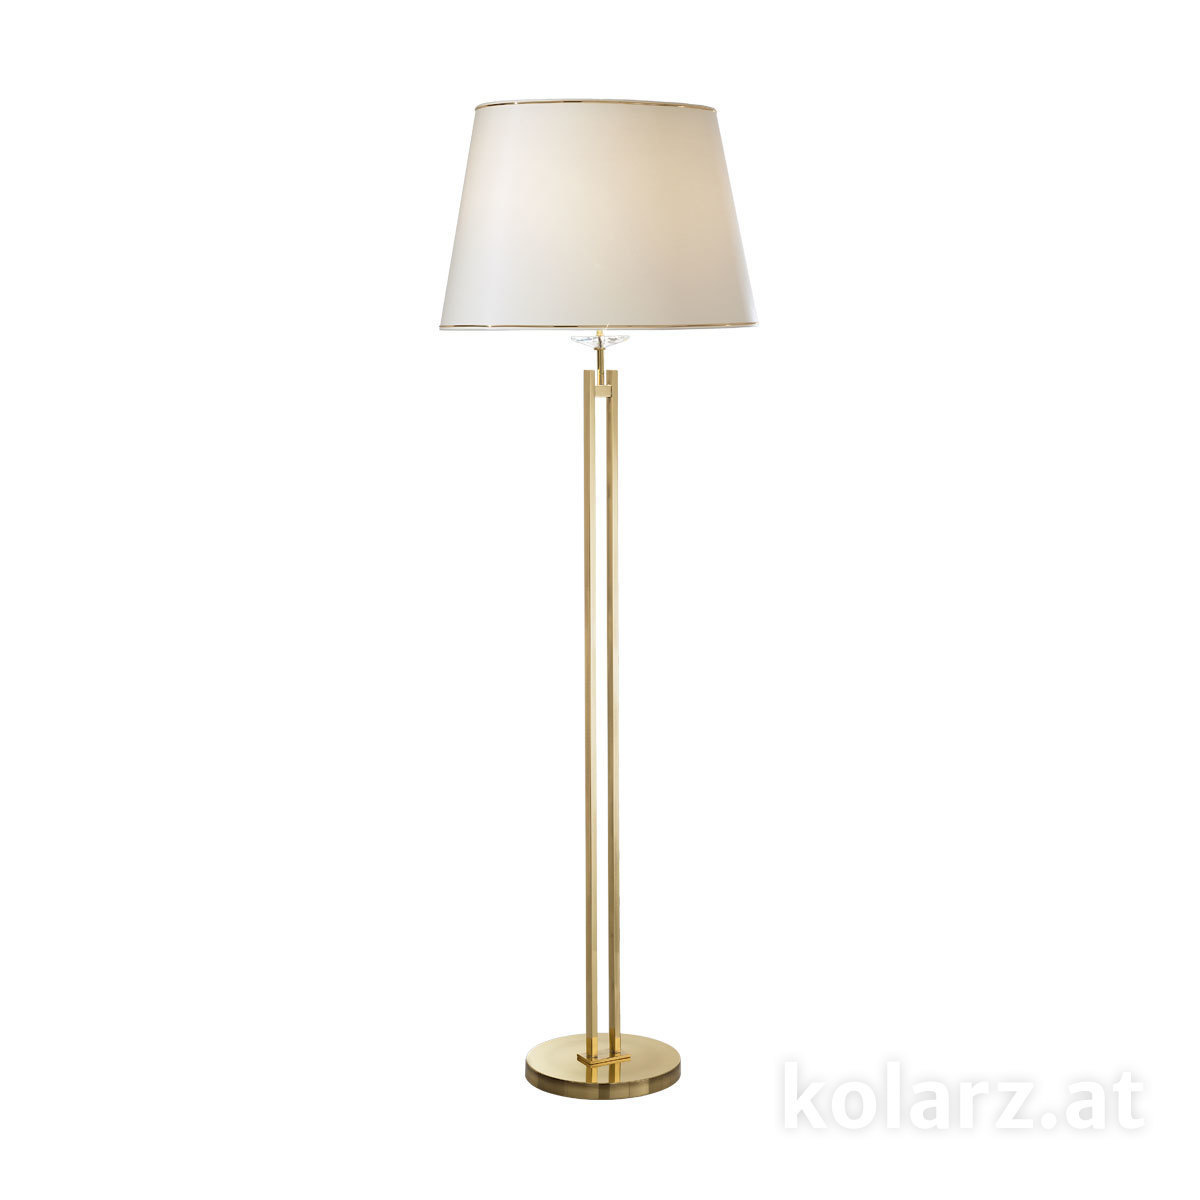 Kristall- fürs Wohnzimmer von KOLARZ Leuchten Bodenleuchte,  floor lamp - Imperial 330.42.8C